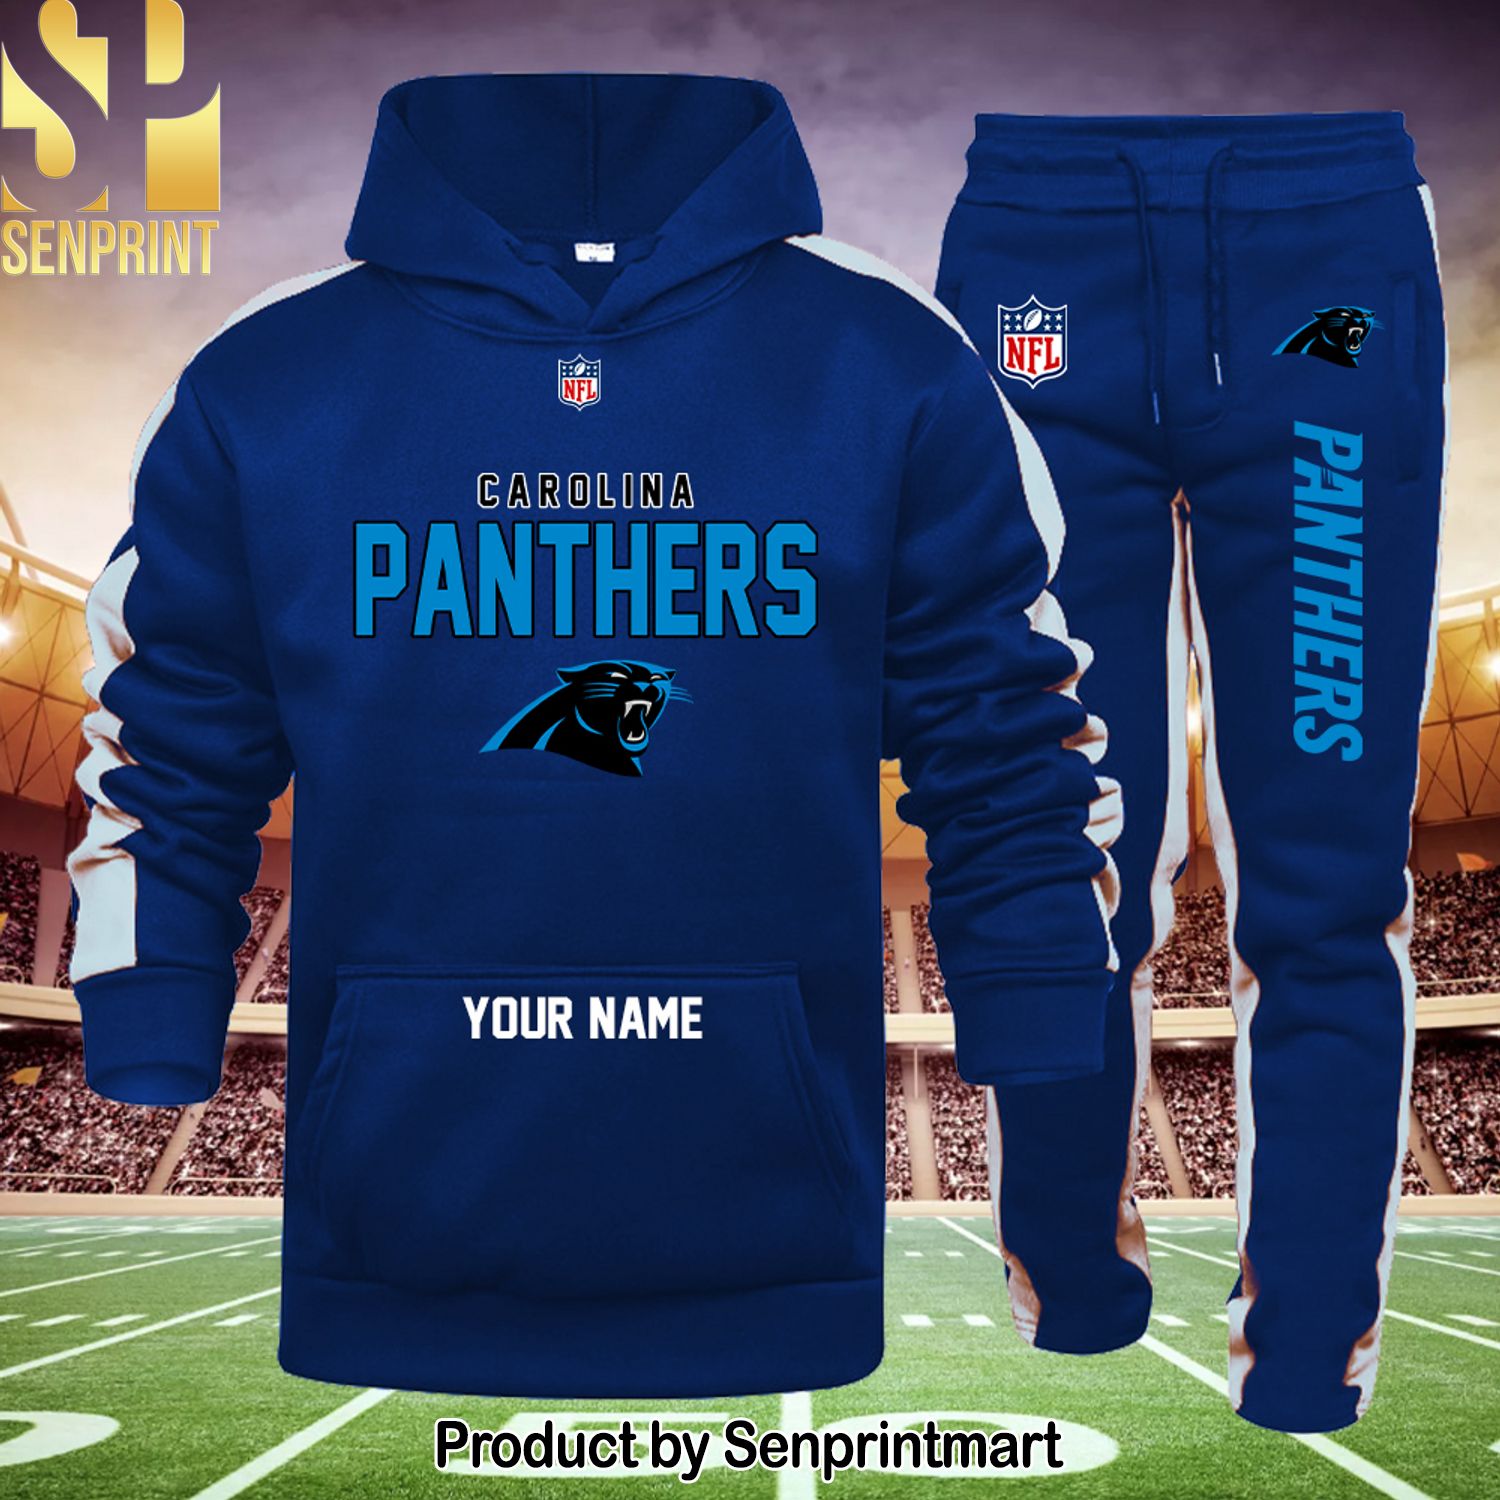 NFL Carolina Panthers Hypebeast Fashion Shirt and Sweatpants